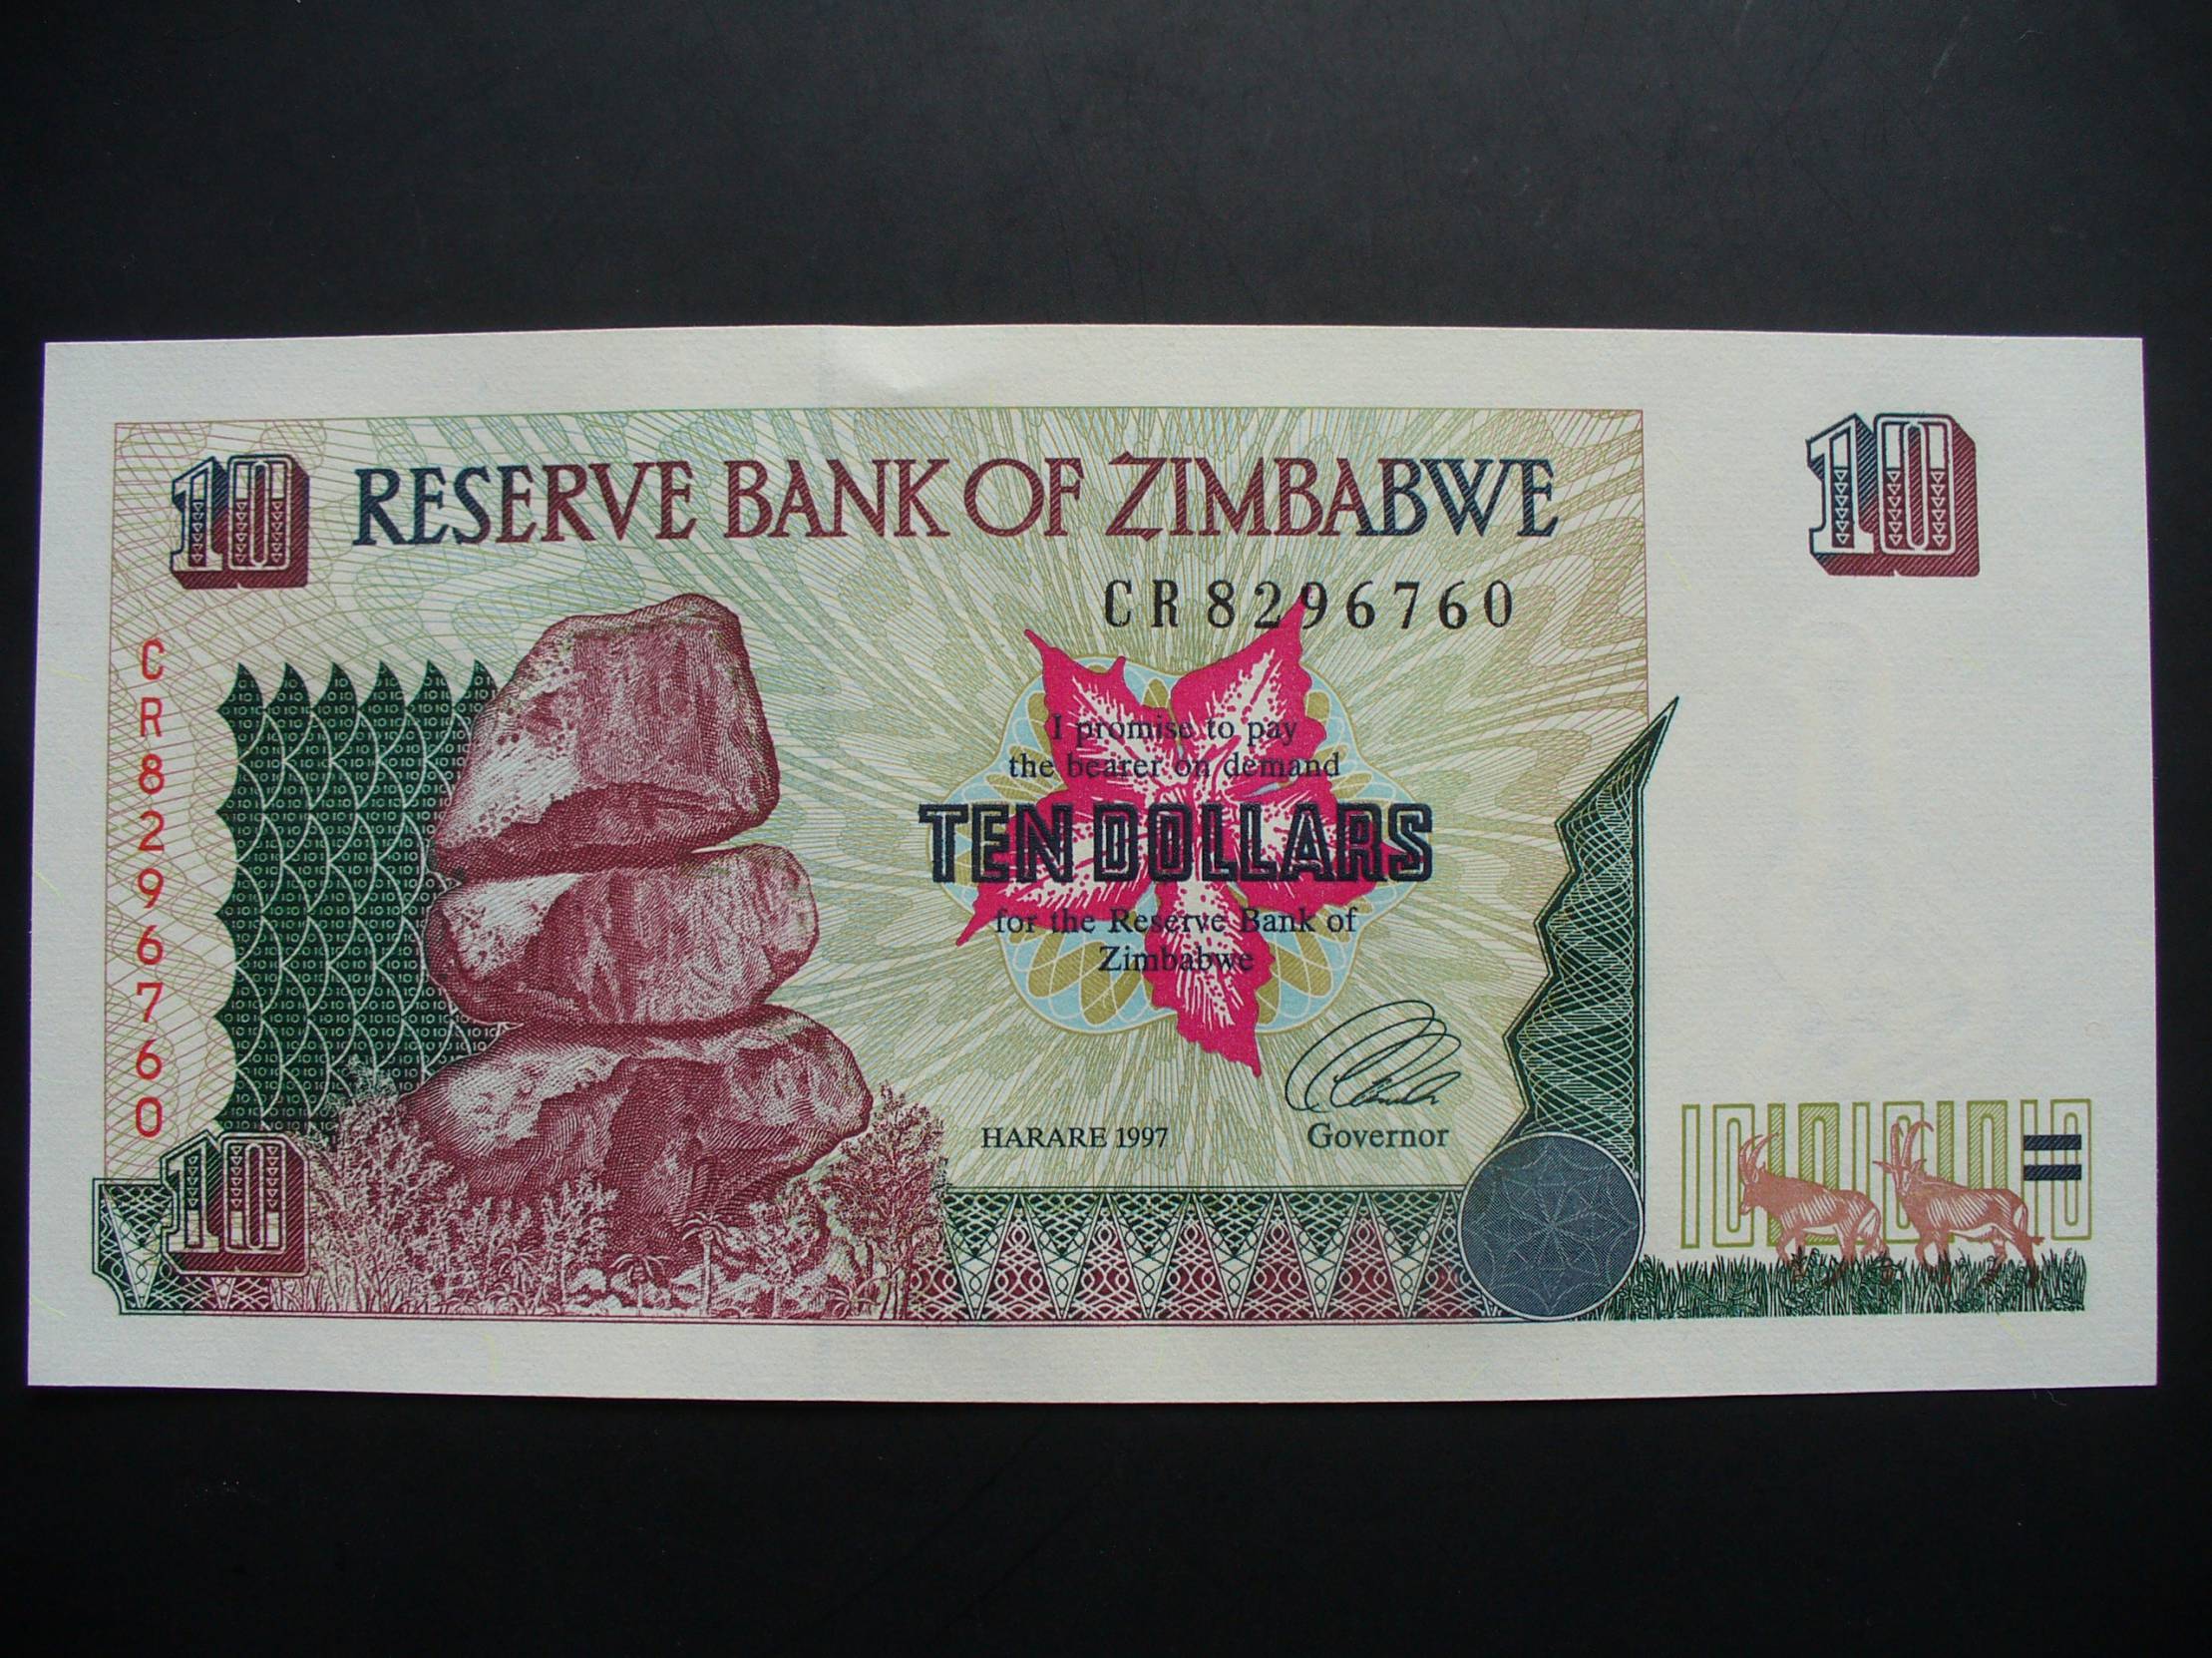 1997 долларов в рубли. 10 Долларов 1997 года. Zeptillion Zimbabwe 10^^900000009 Dollars of USA , Zimbabwe .... By one banknot ..... Zeptillion Zimbabwe 10^20000002 .... Zimbabwe .... By one banknot ....10^10^^. Zeptillion Zimbabwe 10^^9000000009^10 .... Dollars of USA , Zimbabwe .... By one banknot .....